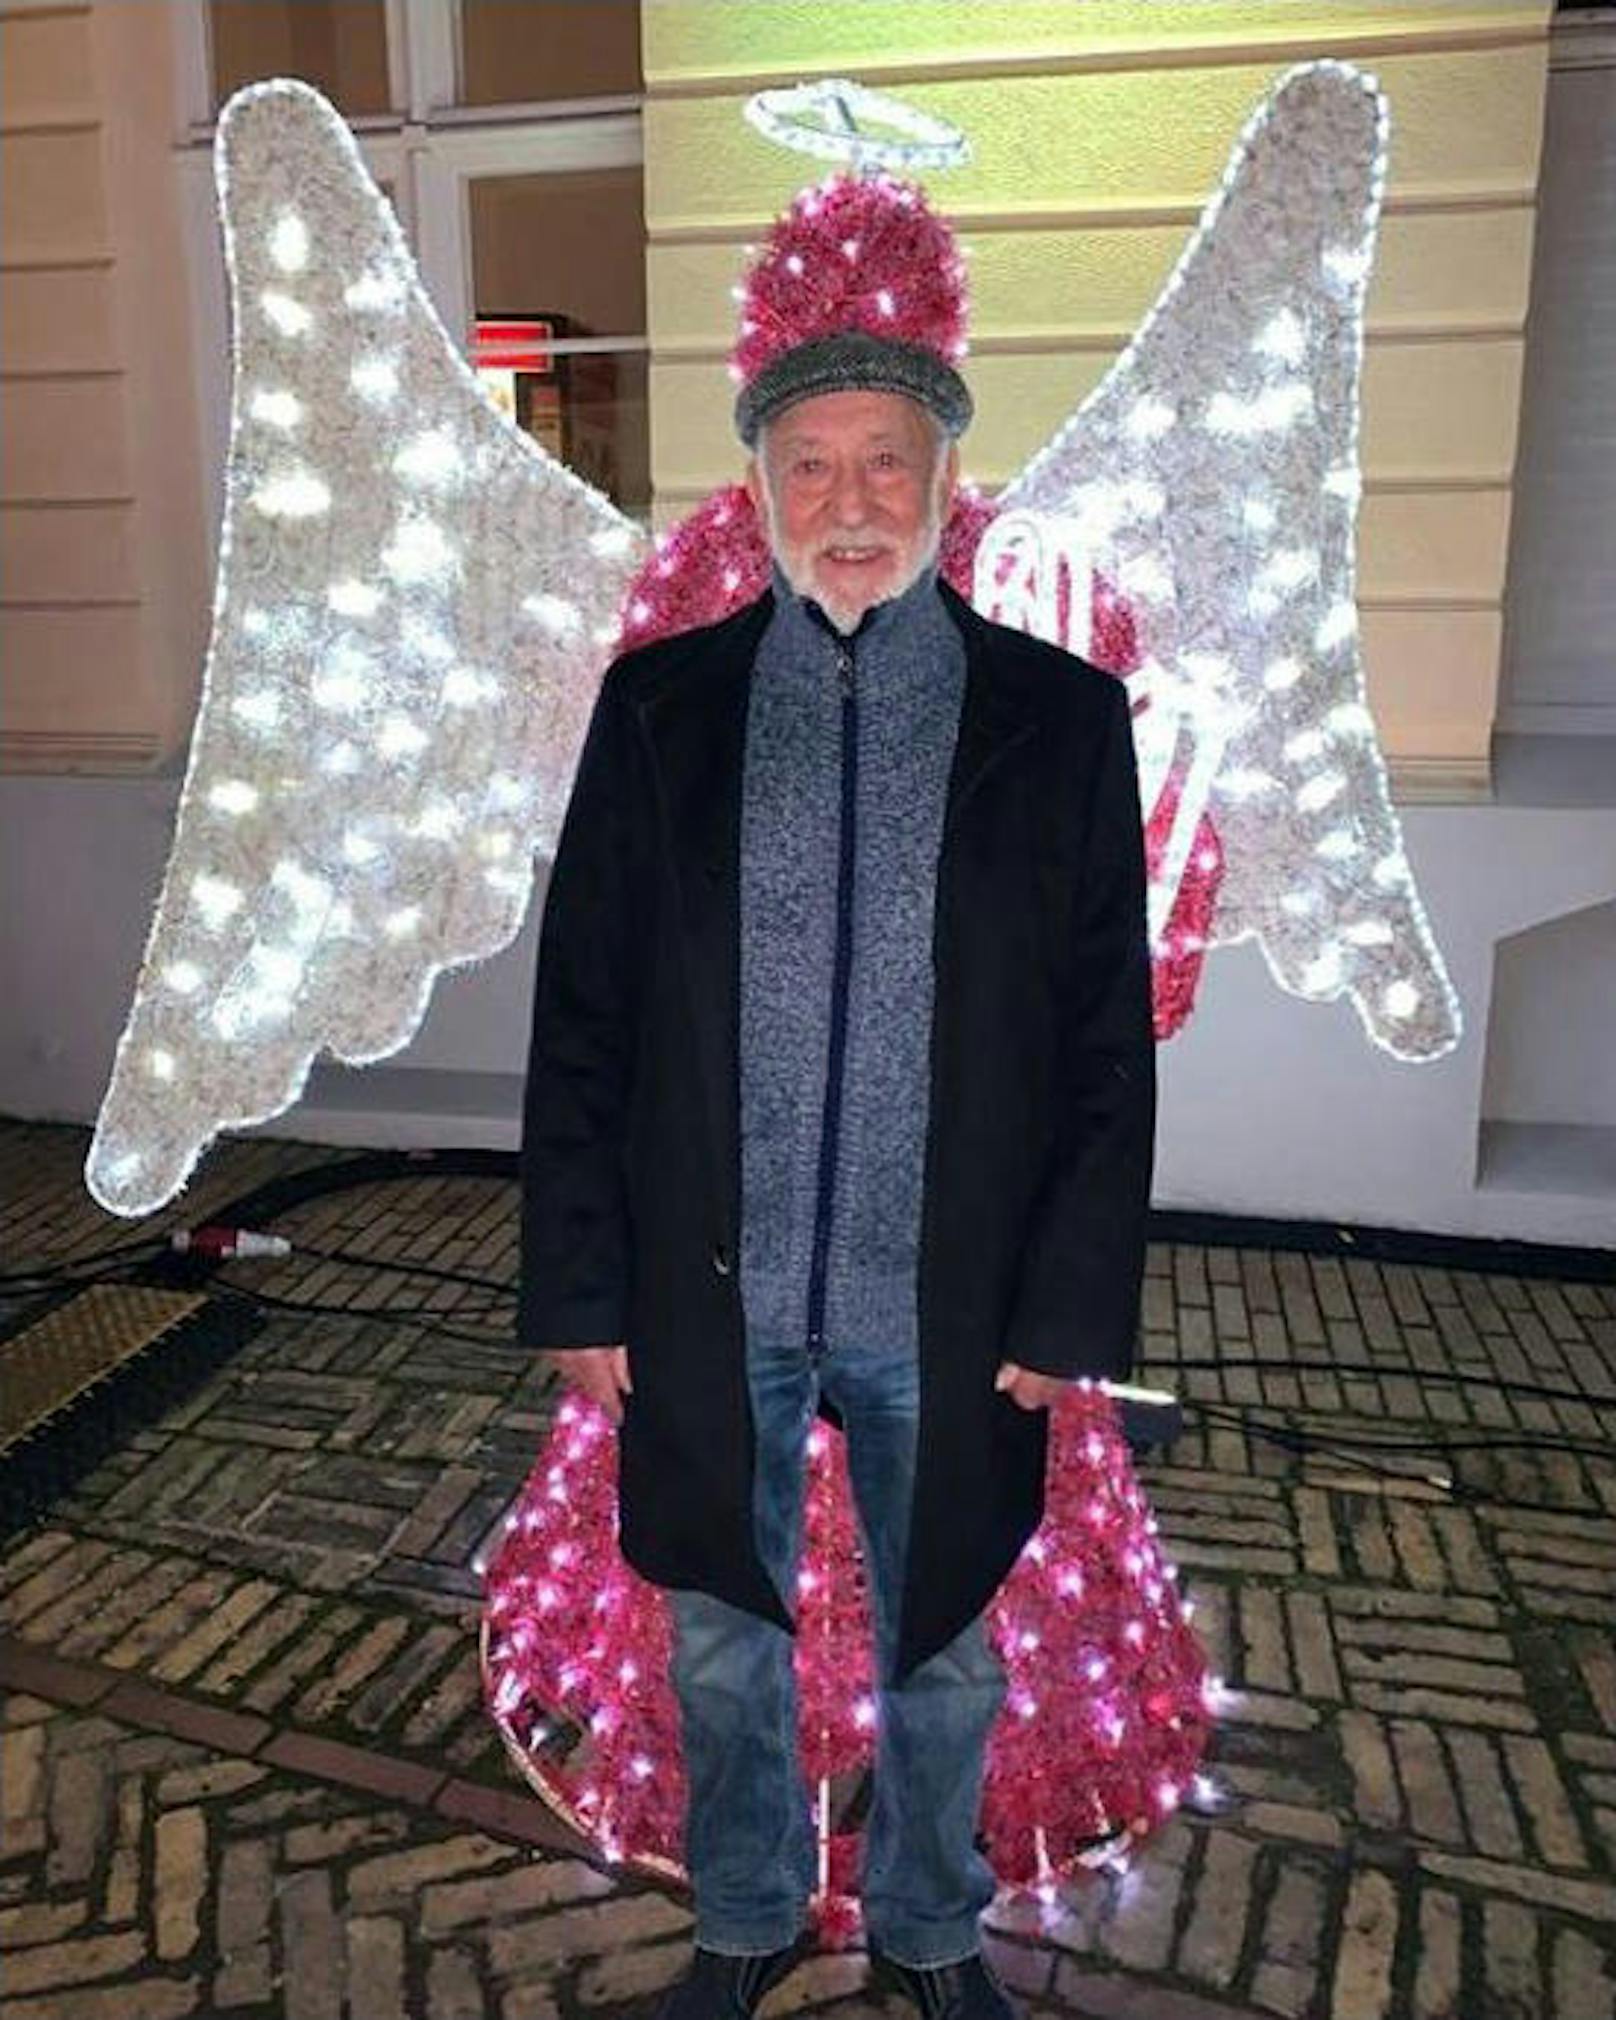 23.12.2019: Kommt ein Weihnachtsengerl geflogen: Dieter Hallervorden schmückt sich mit einem fremden Heiligenschein und lässt sich Flügerl wachsen. Ach ja, zu Weihnachten ist ihm auch mehr als nur ein Licht aufgegangen. Diese Erleuchtung teilt er mit uns. 